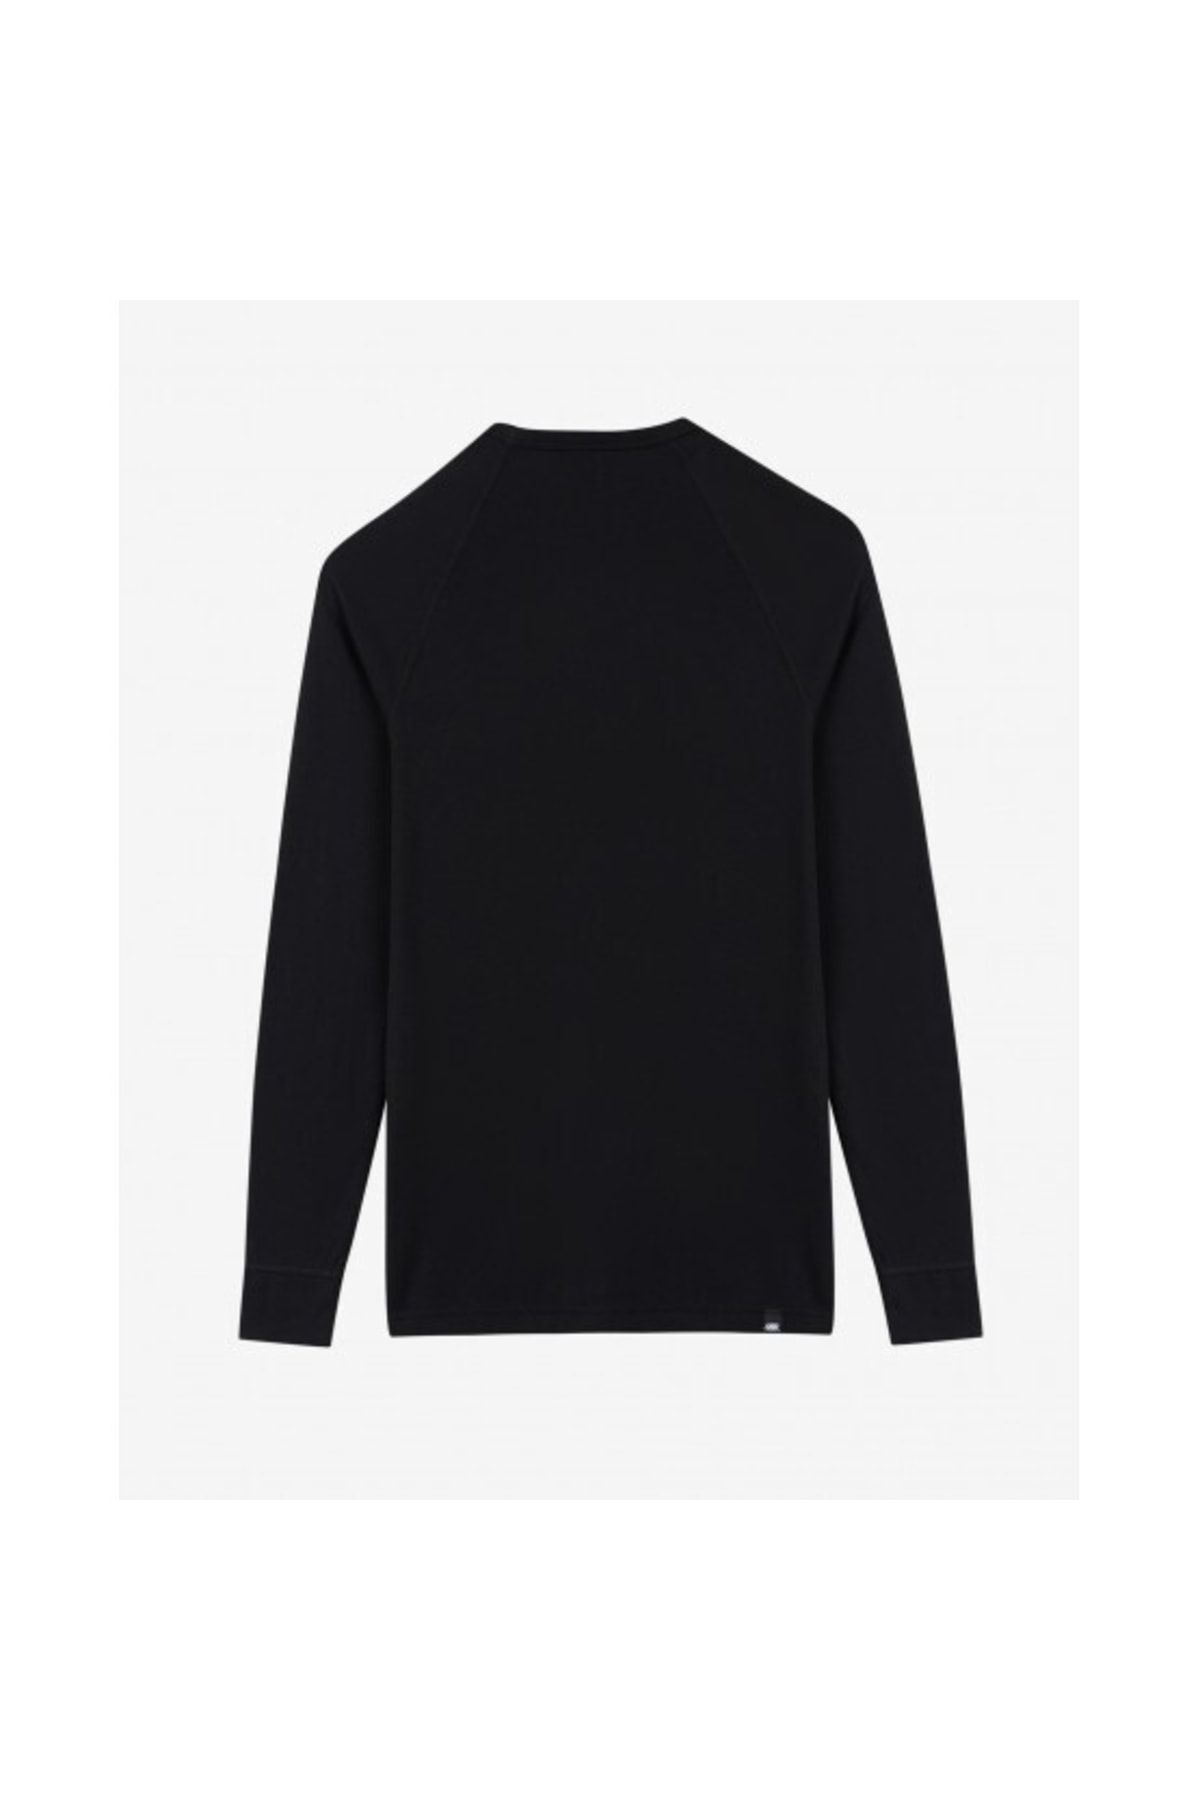 Skechers U Thermal Long Sleeve T-shirt Erkek Siyah Sweatshirt S202605-001